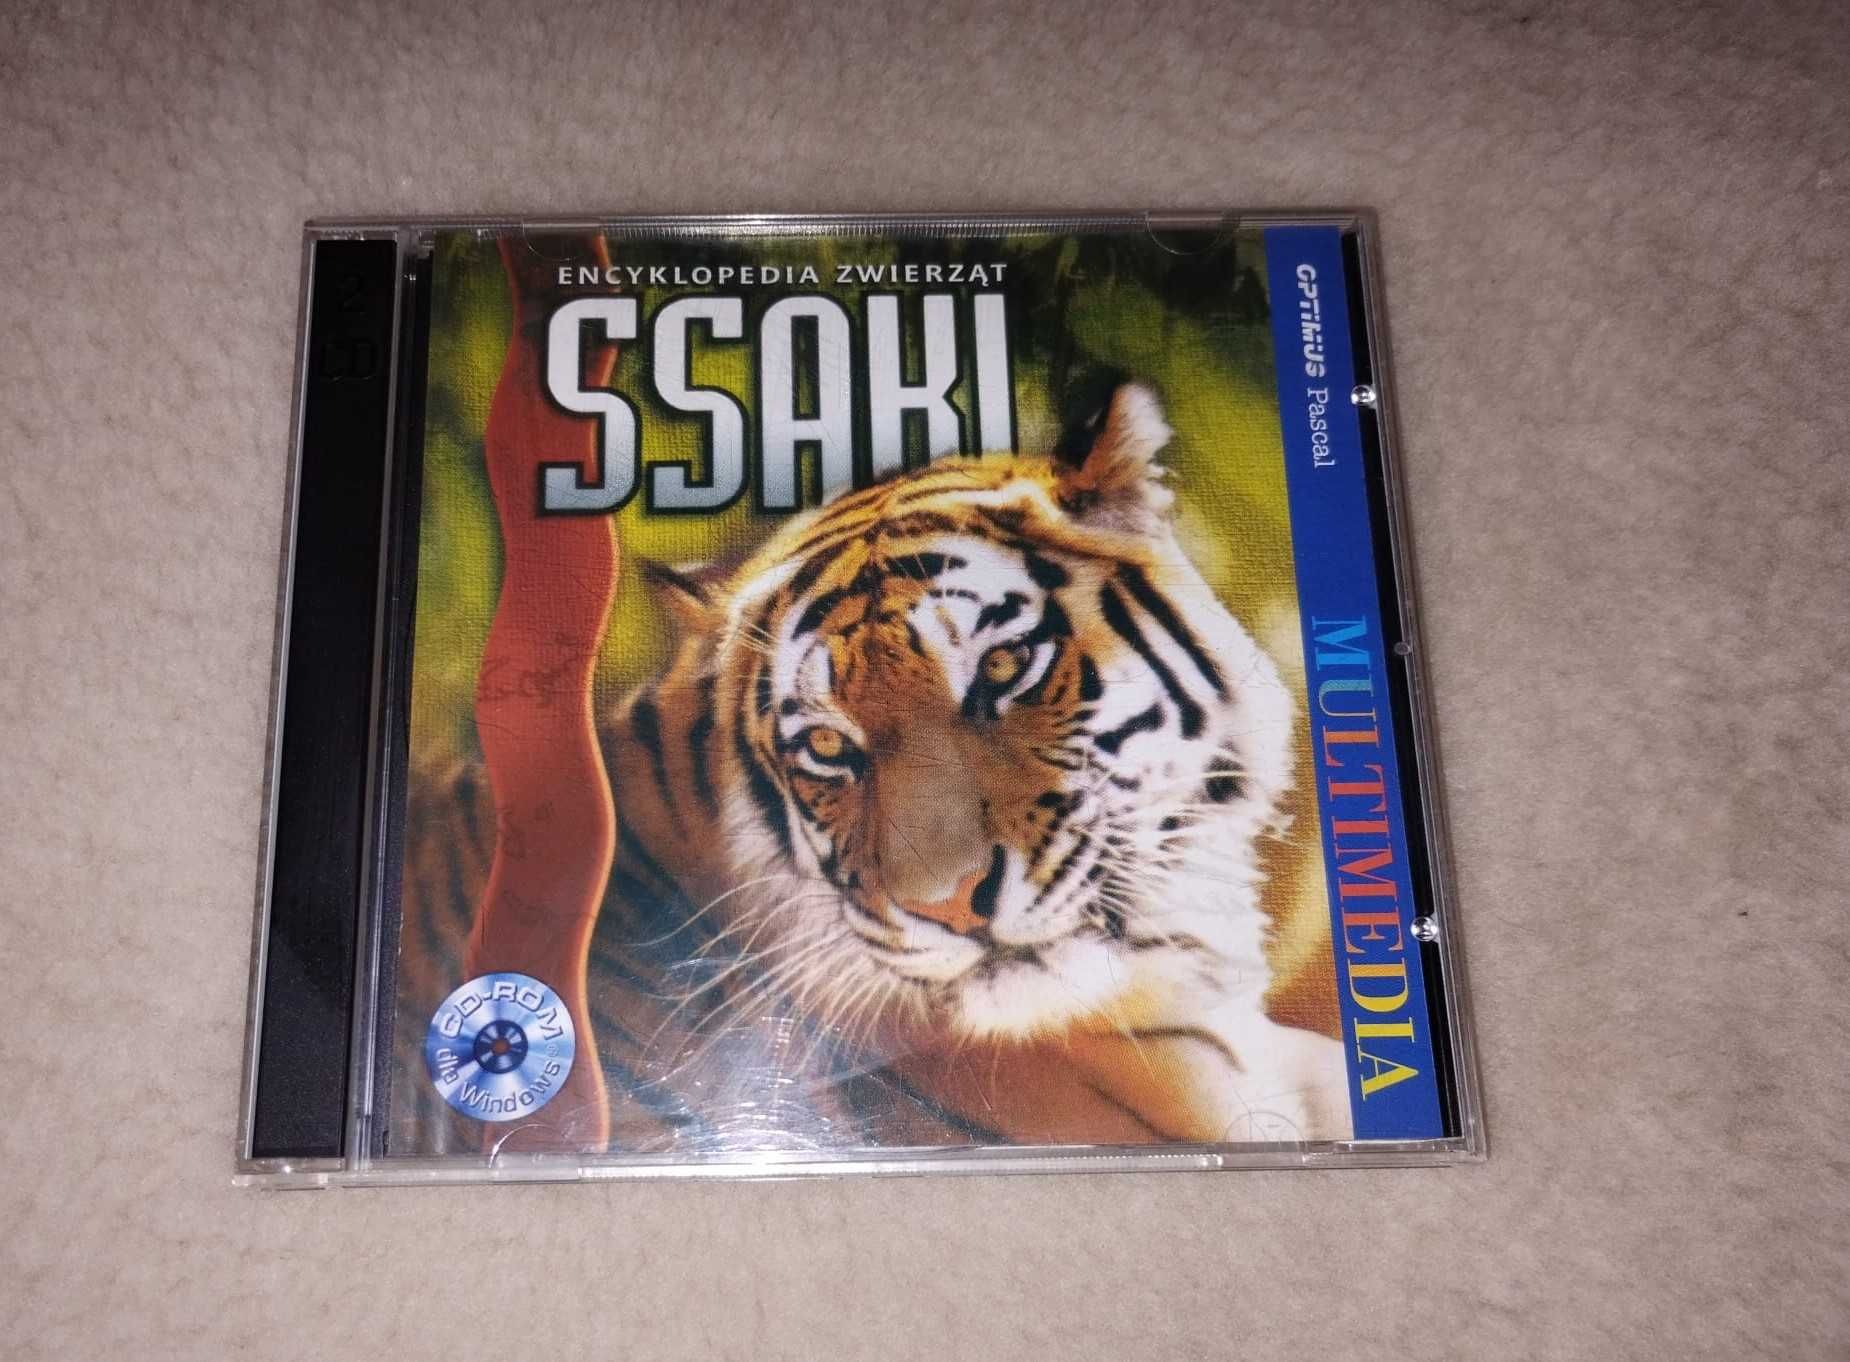 CD-ROM, encyklopedia zwierząt, SSAKI, 2 płyty CD, dzikie zwierzęta